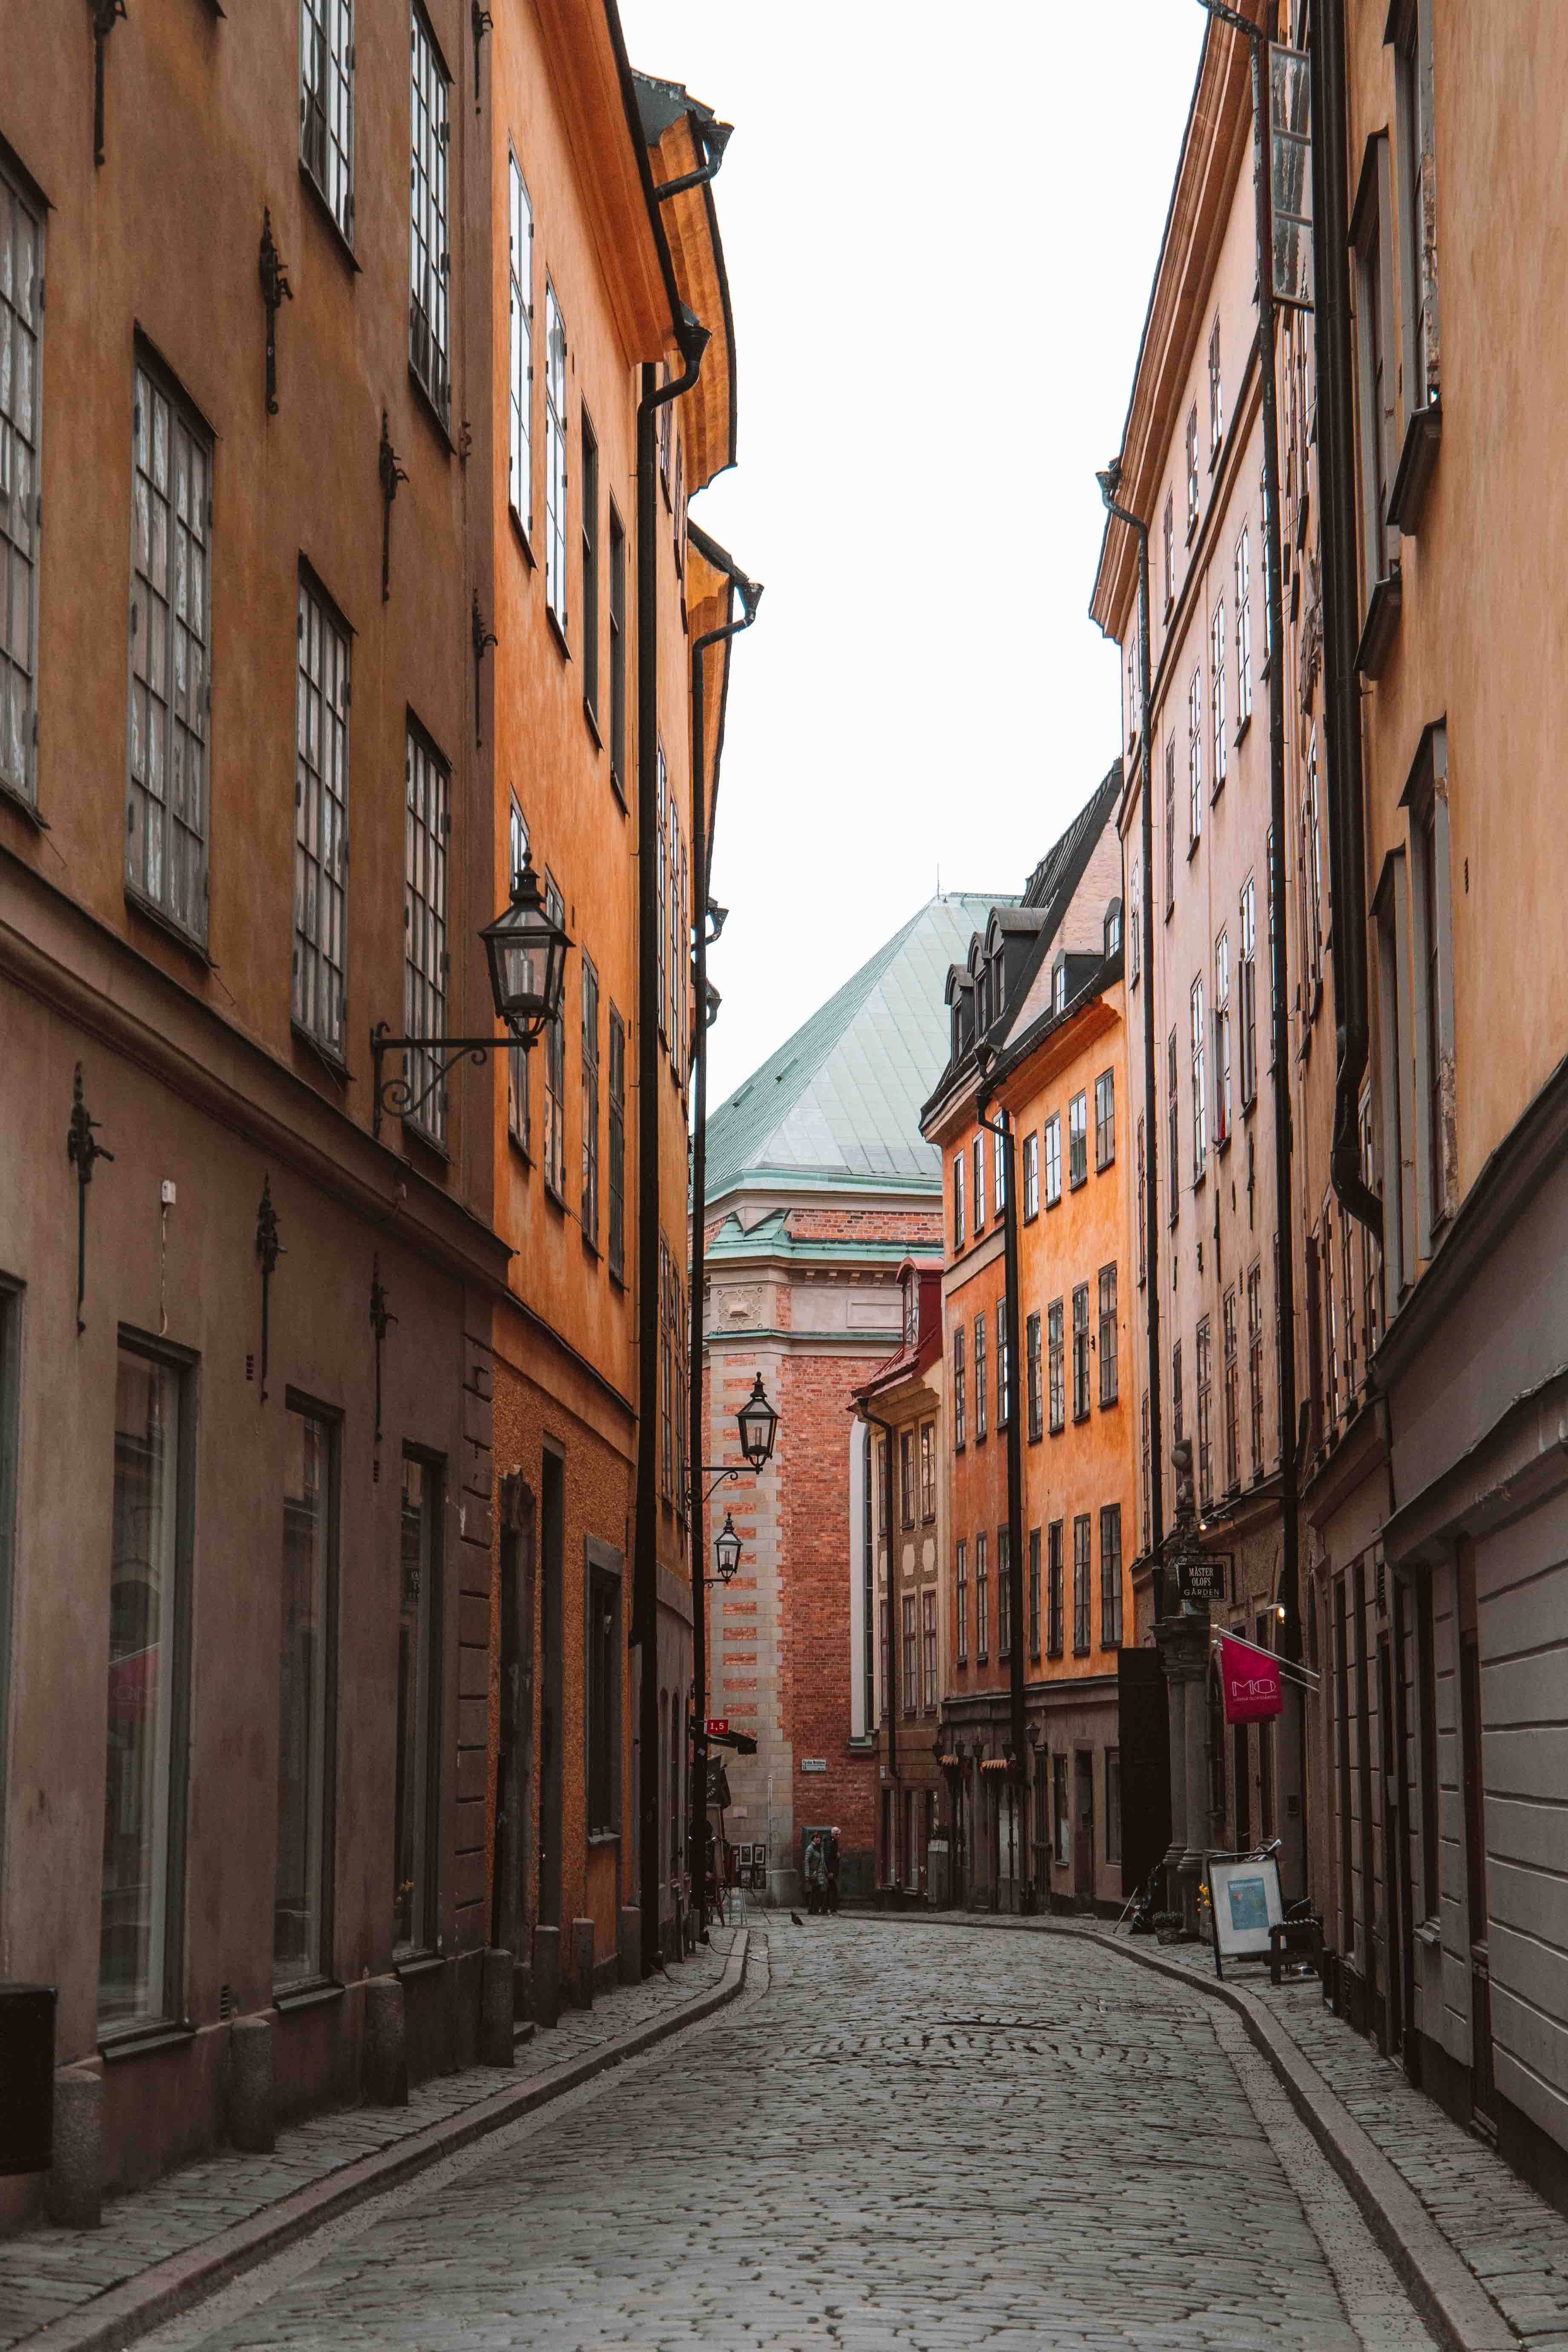 visit stockholm 3 days